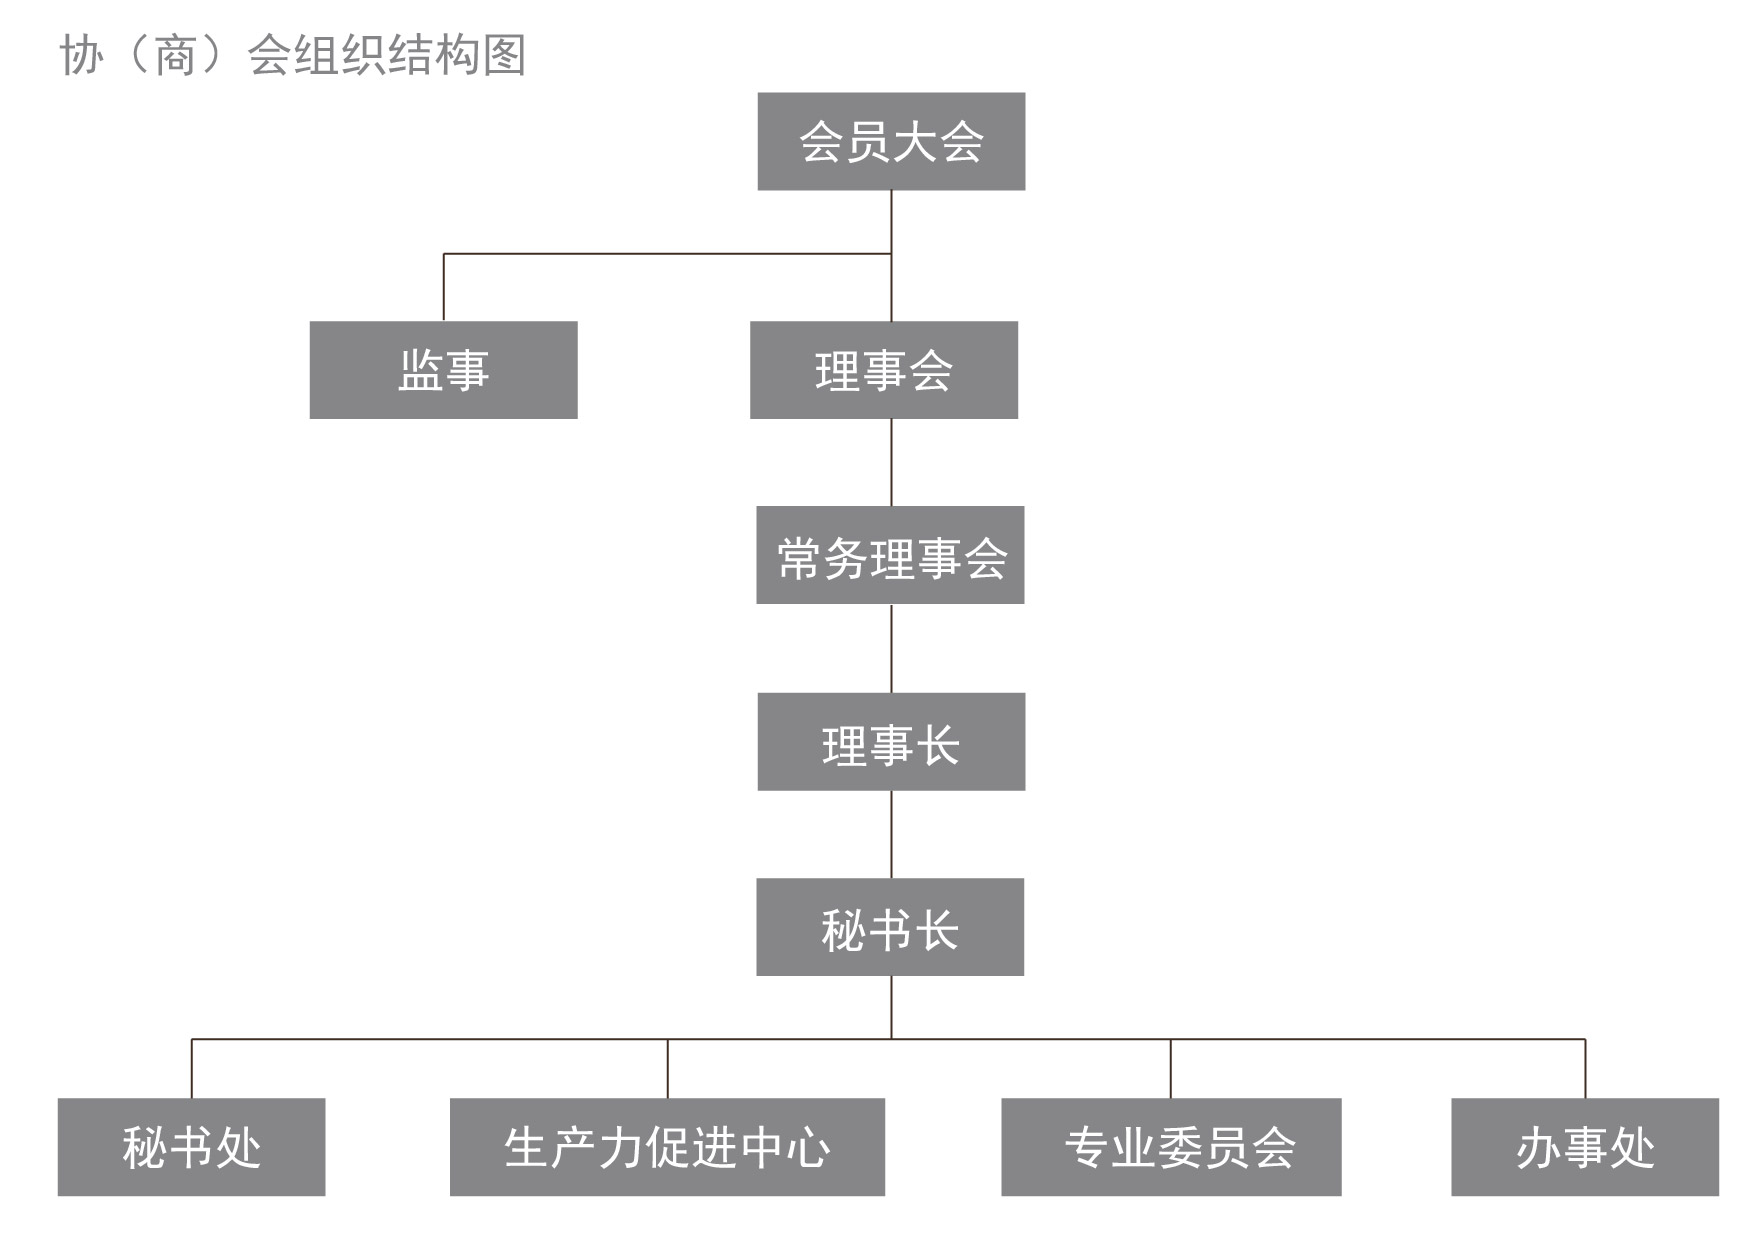 协商会组织架构图-01.jpg